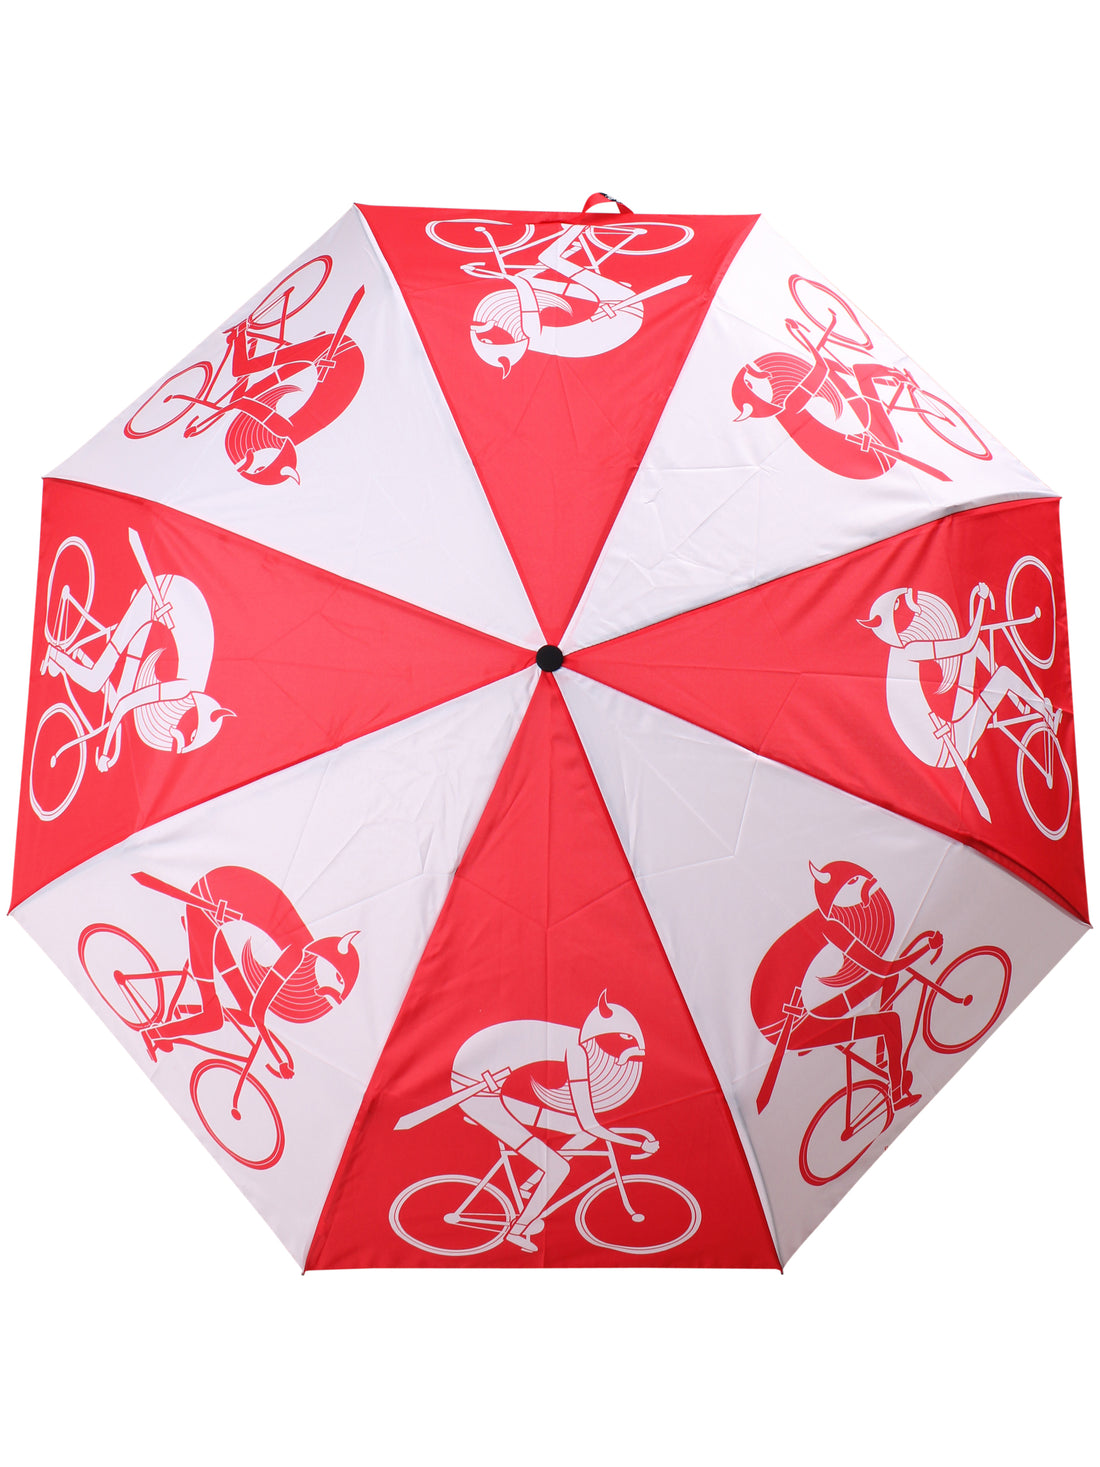 Danumbrella - Red/White BIKING VIKING